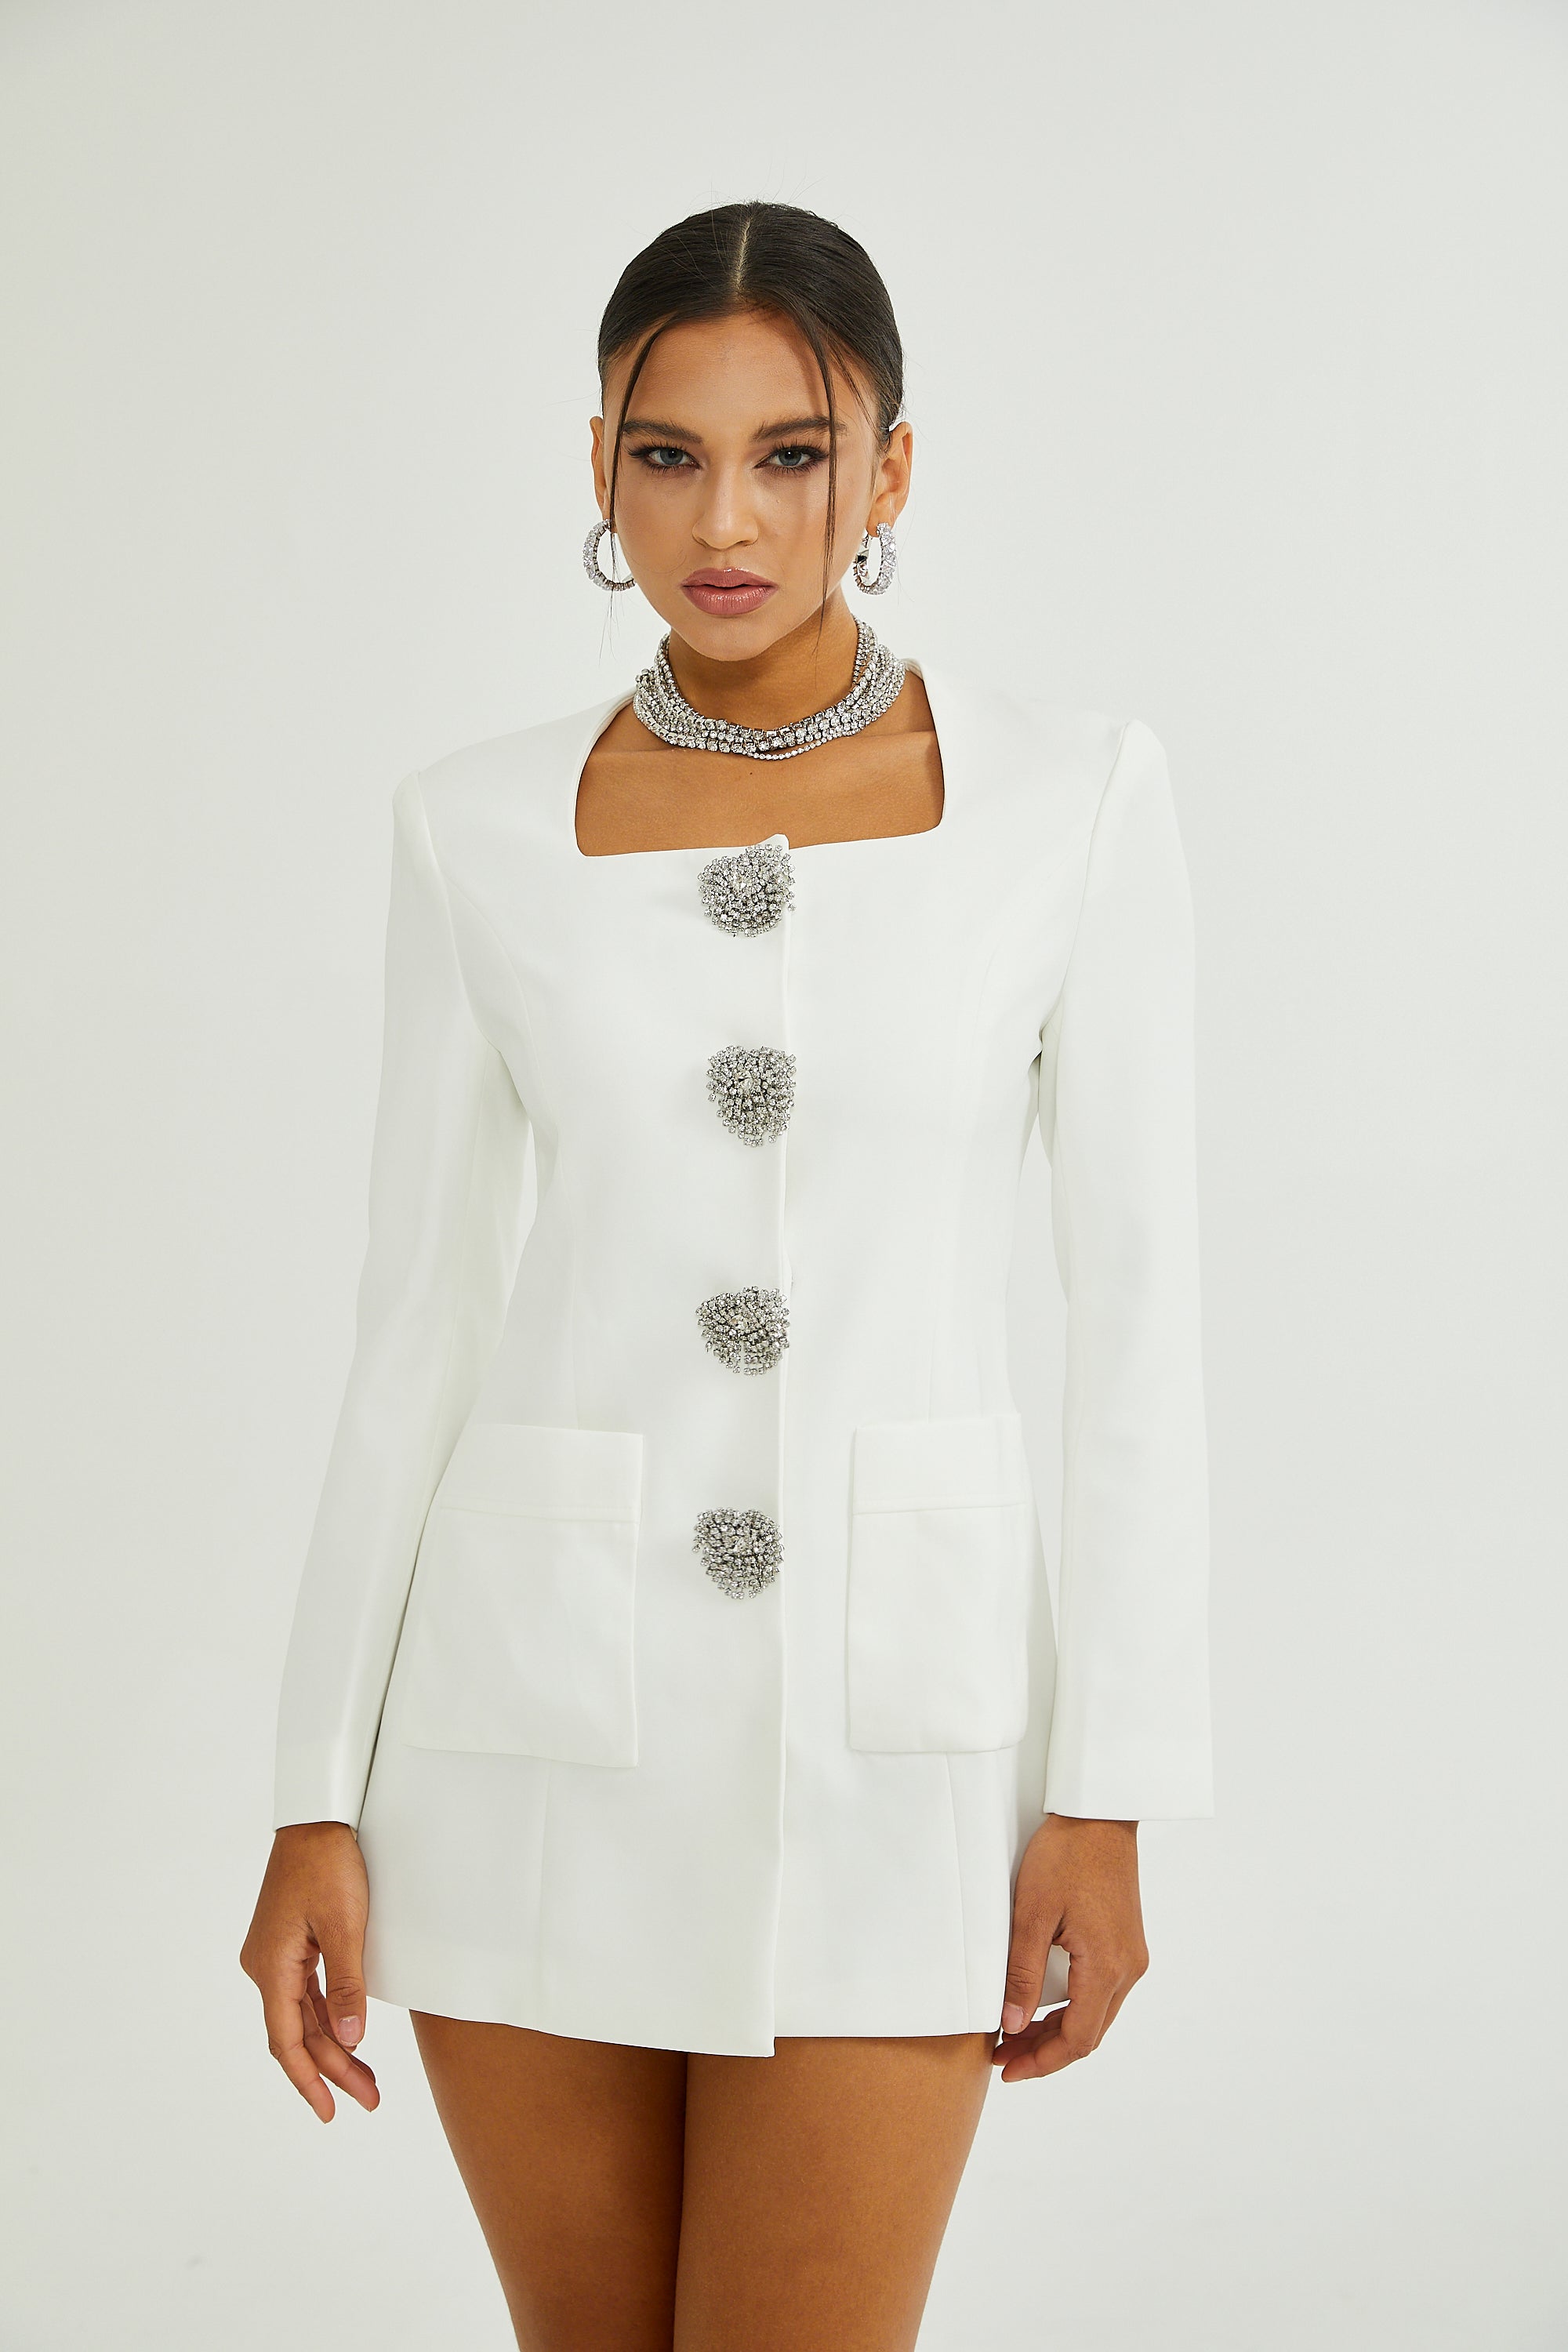 Fionnghuala dress (White)